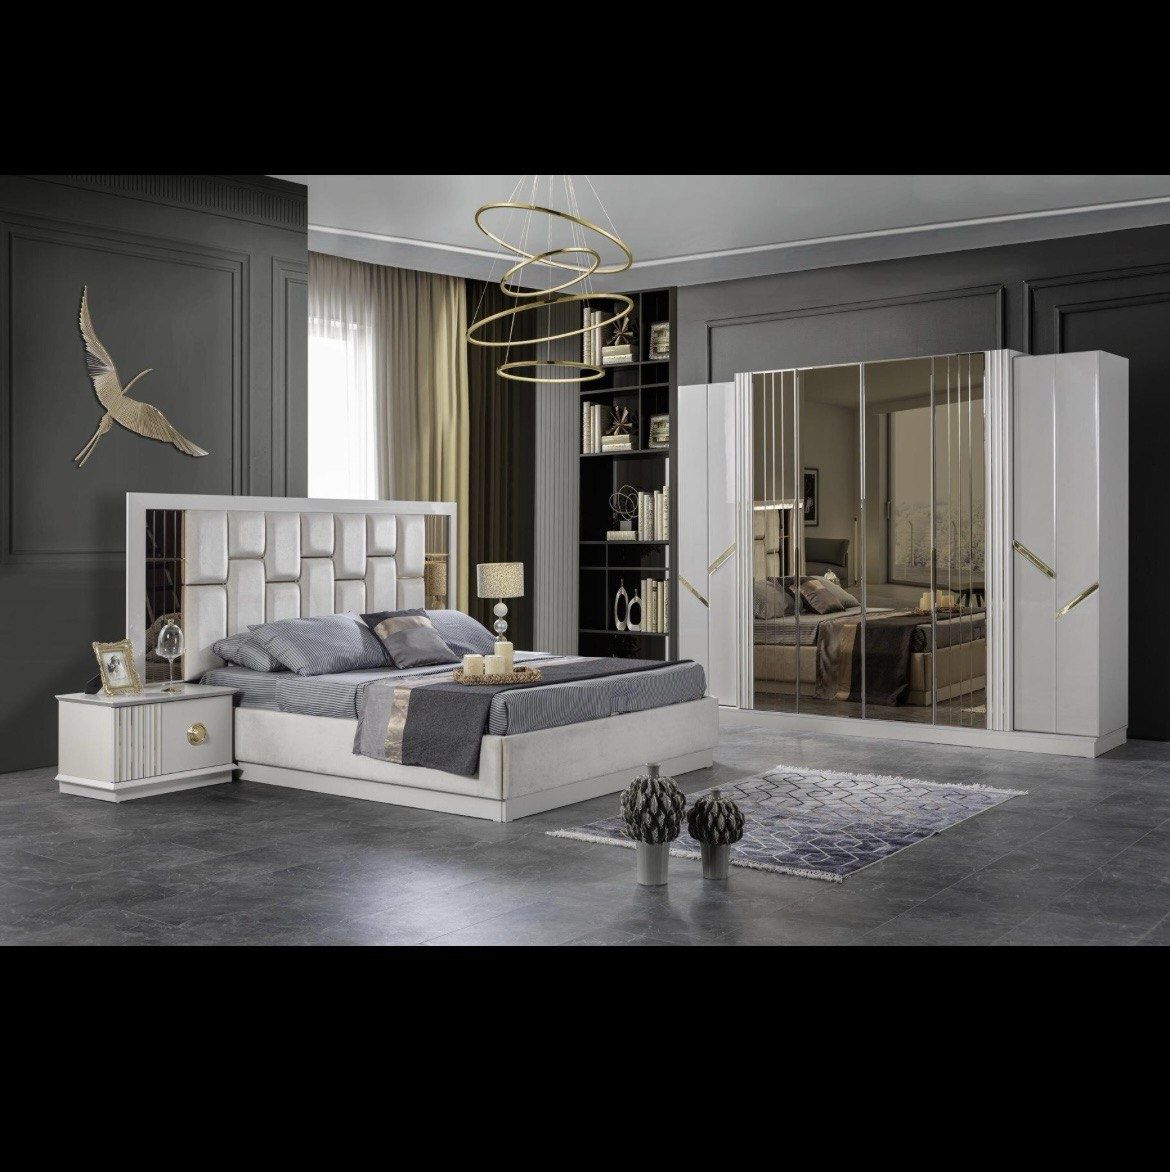 Спальный гарнитур турецкой мебели – это воплощение роскоши и комфорта